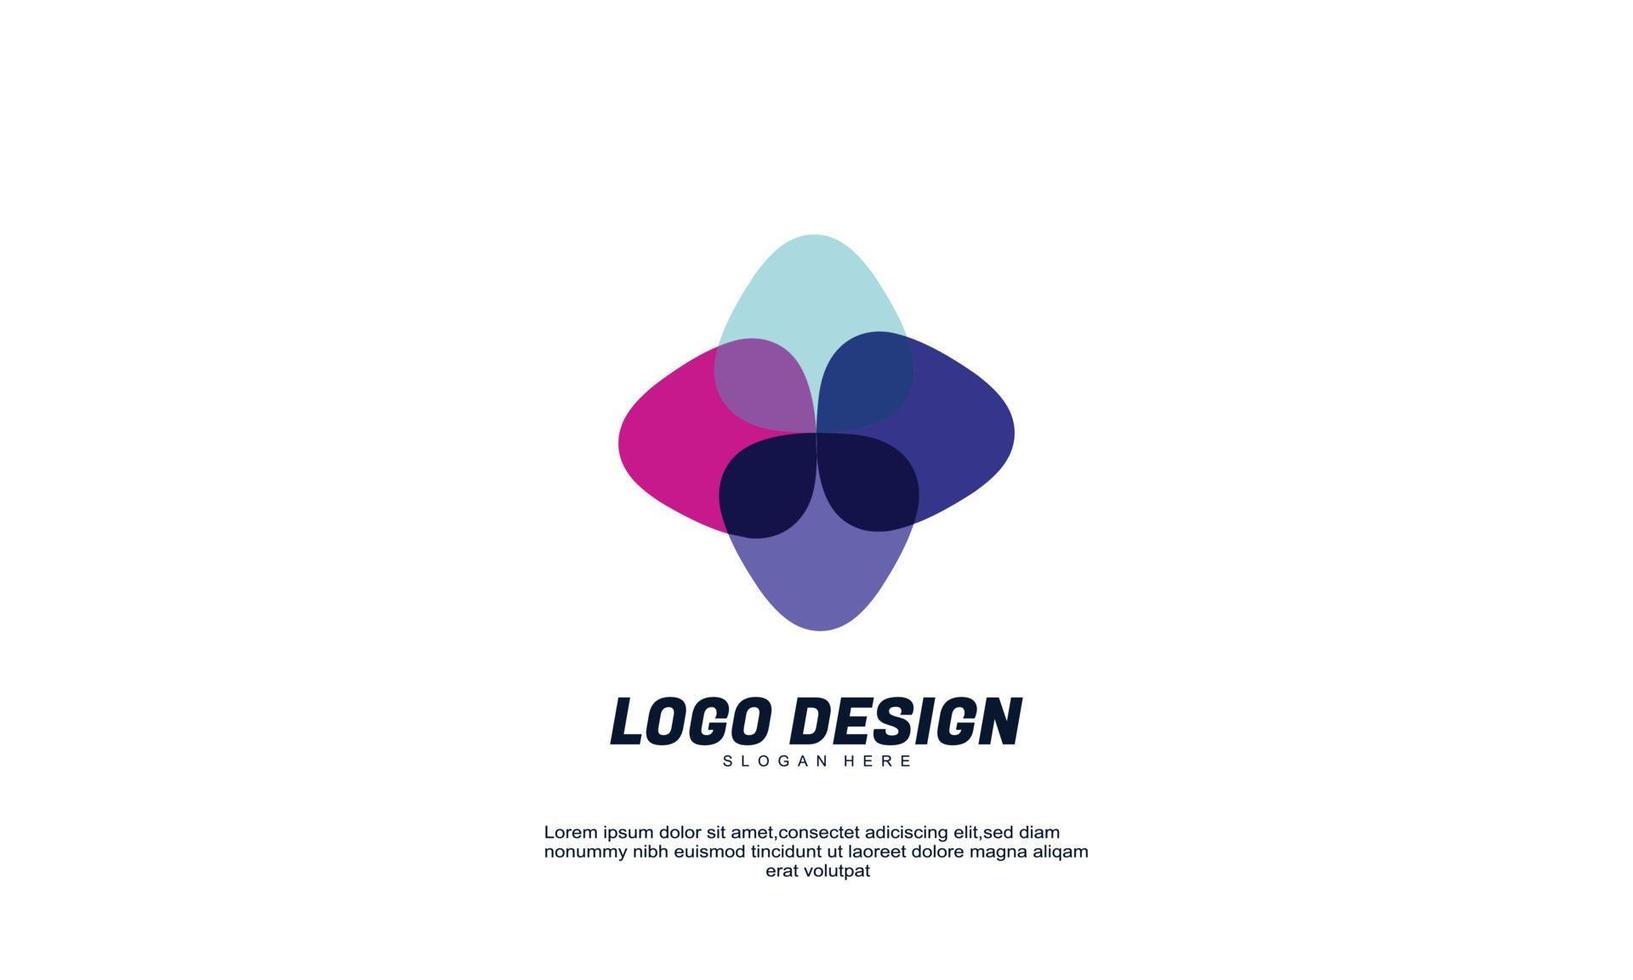 impresionante marca de empresa creativa abstracta con diseño plano multicolor vector